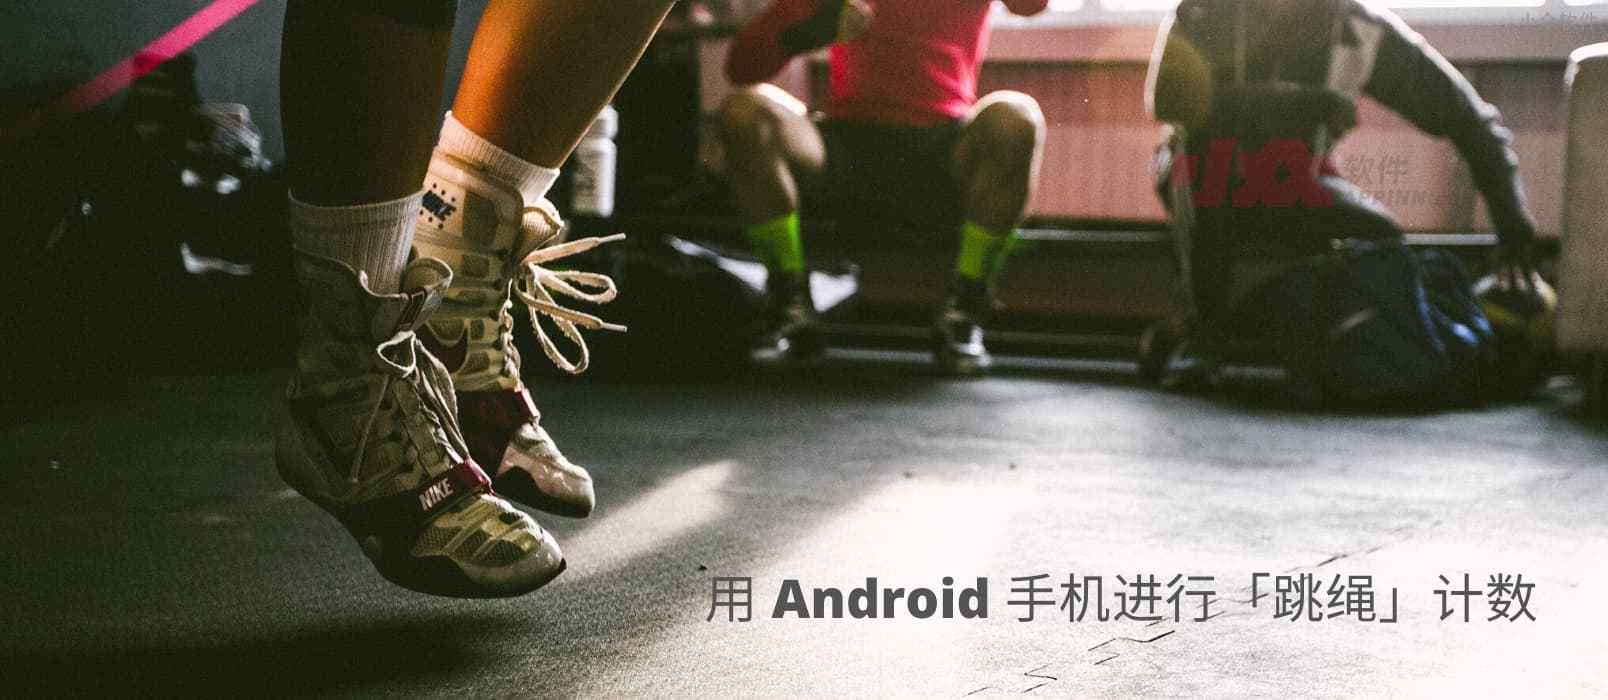 如何用 Android 手机进行跳绳计数？ 1